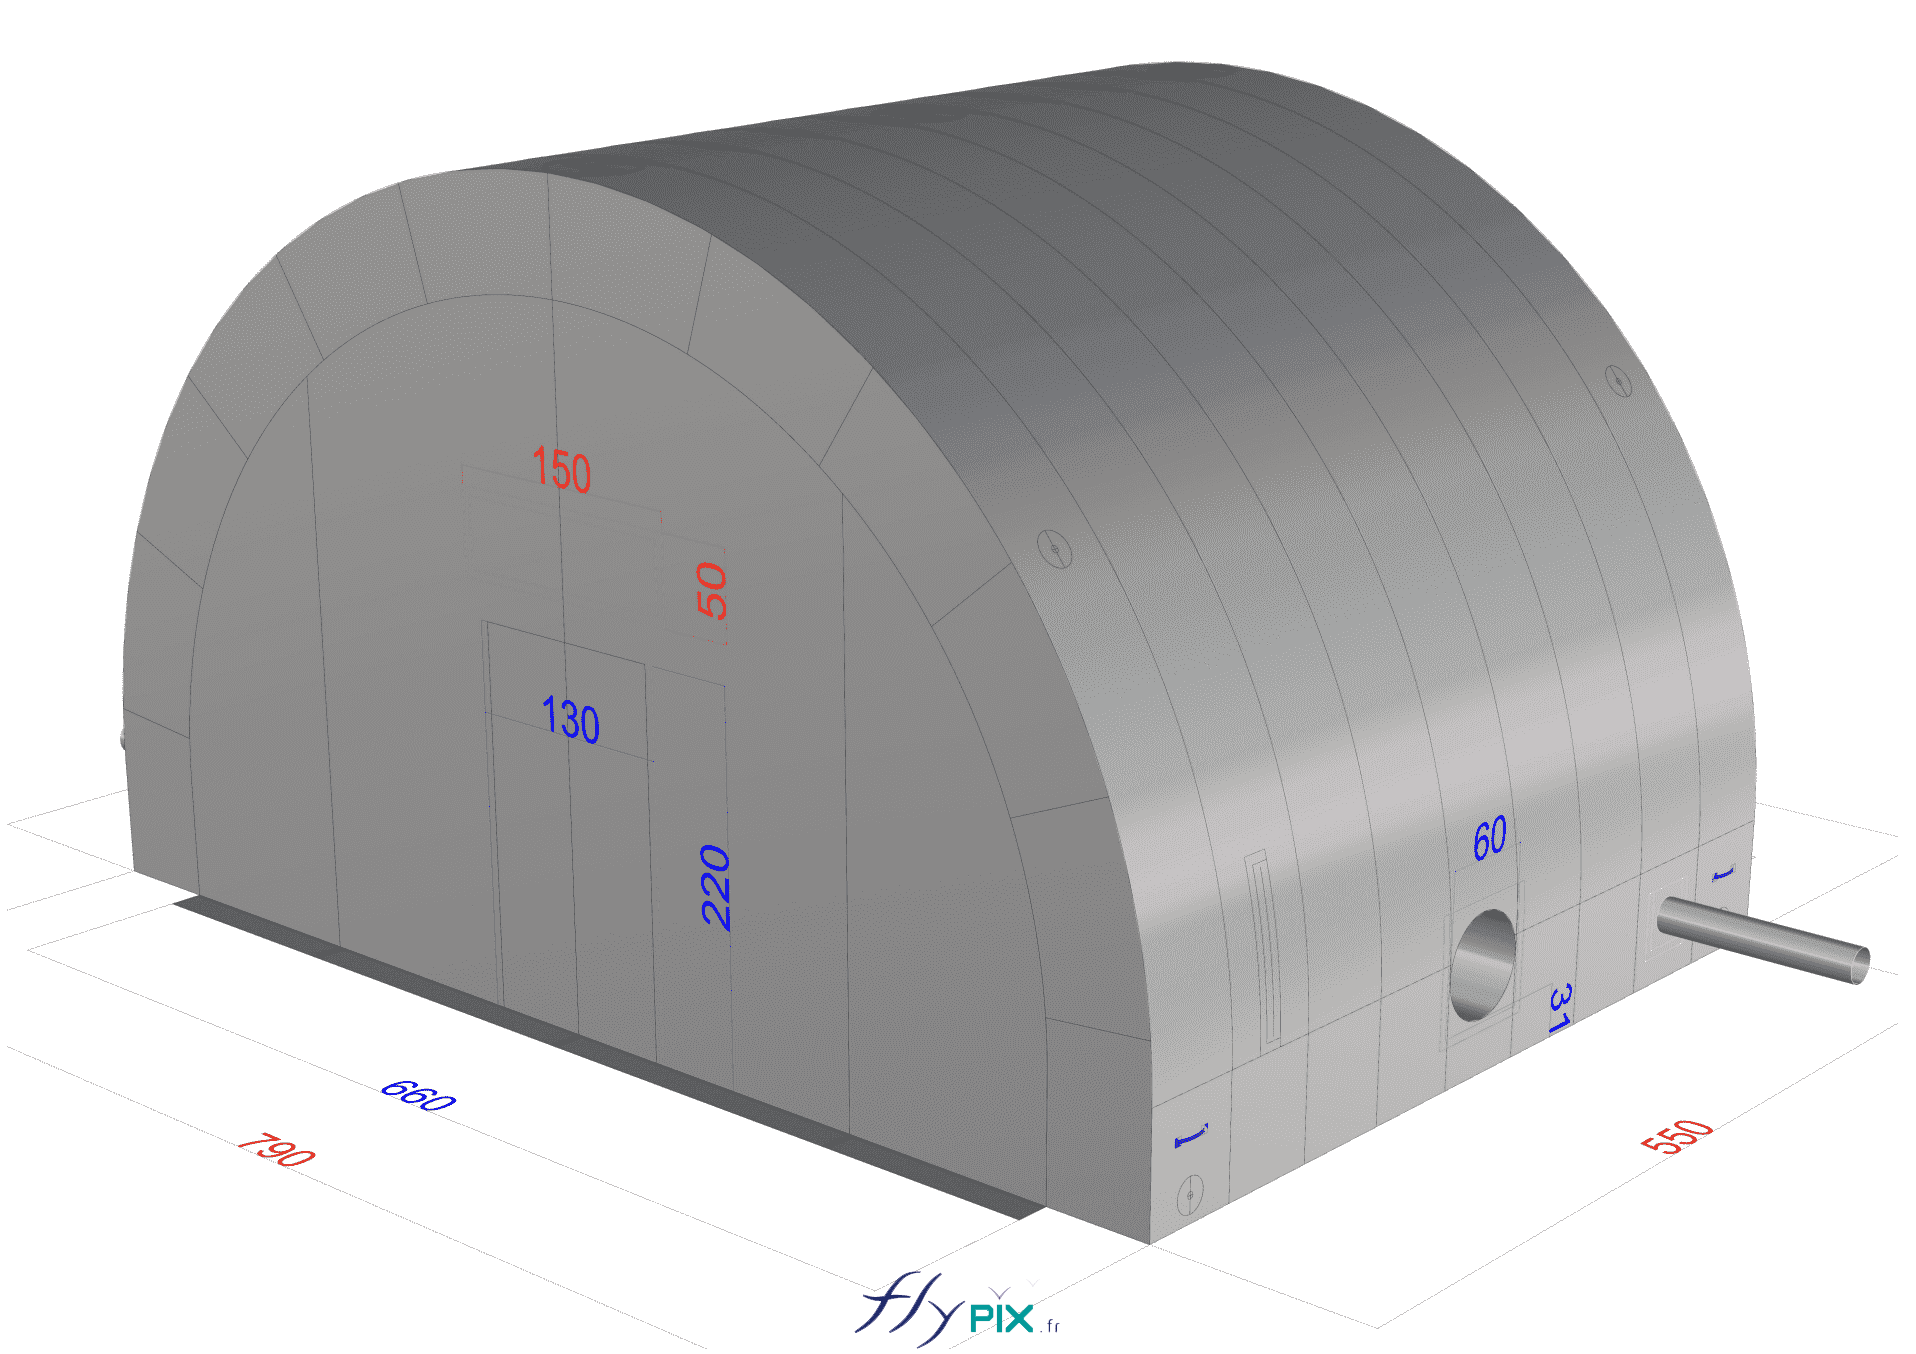 BAT (bon à tirer), modélisation 3D : Hydro Exploitation, en Suisse : fabrication sur mesure d'une tente gonflable industrielle.